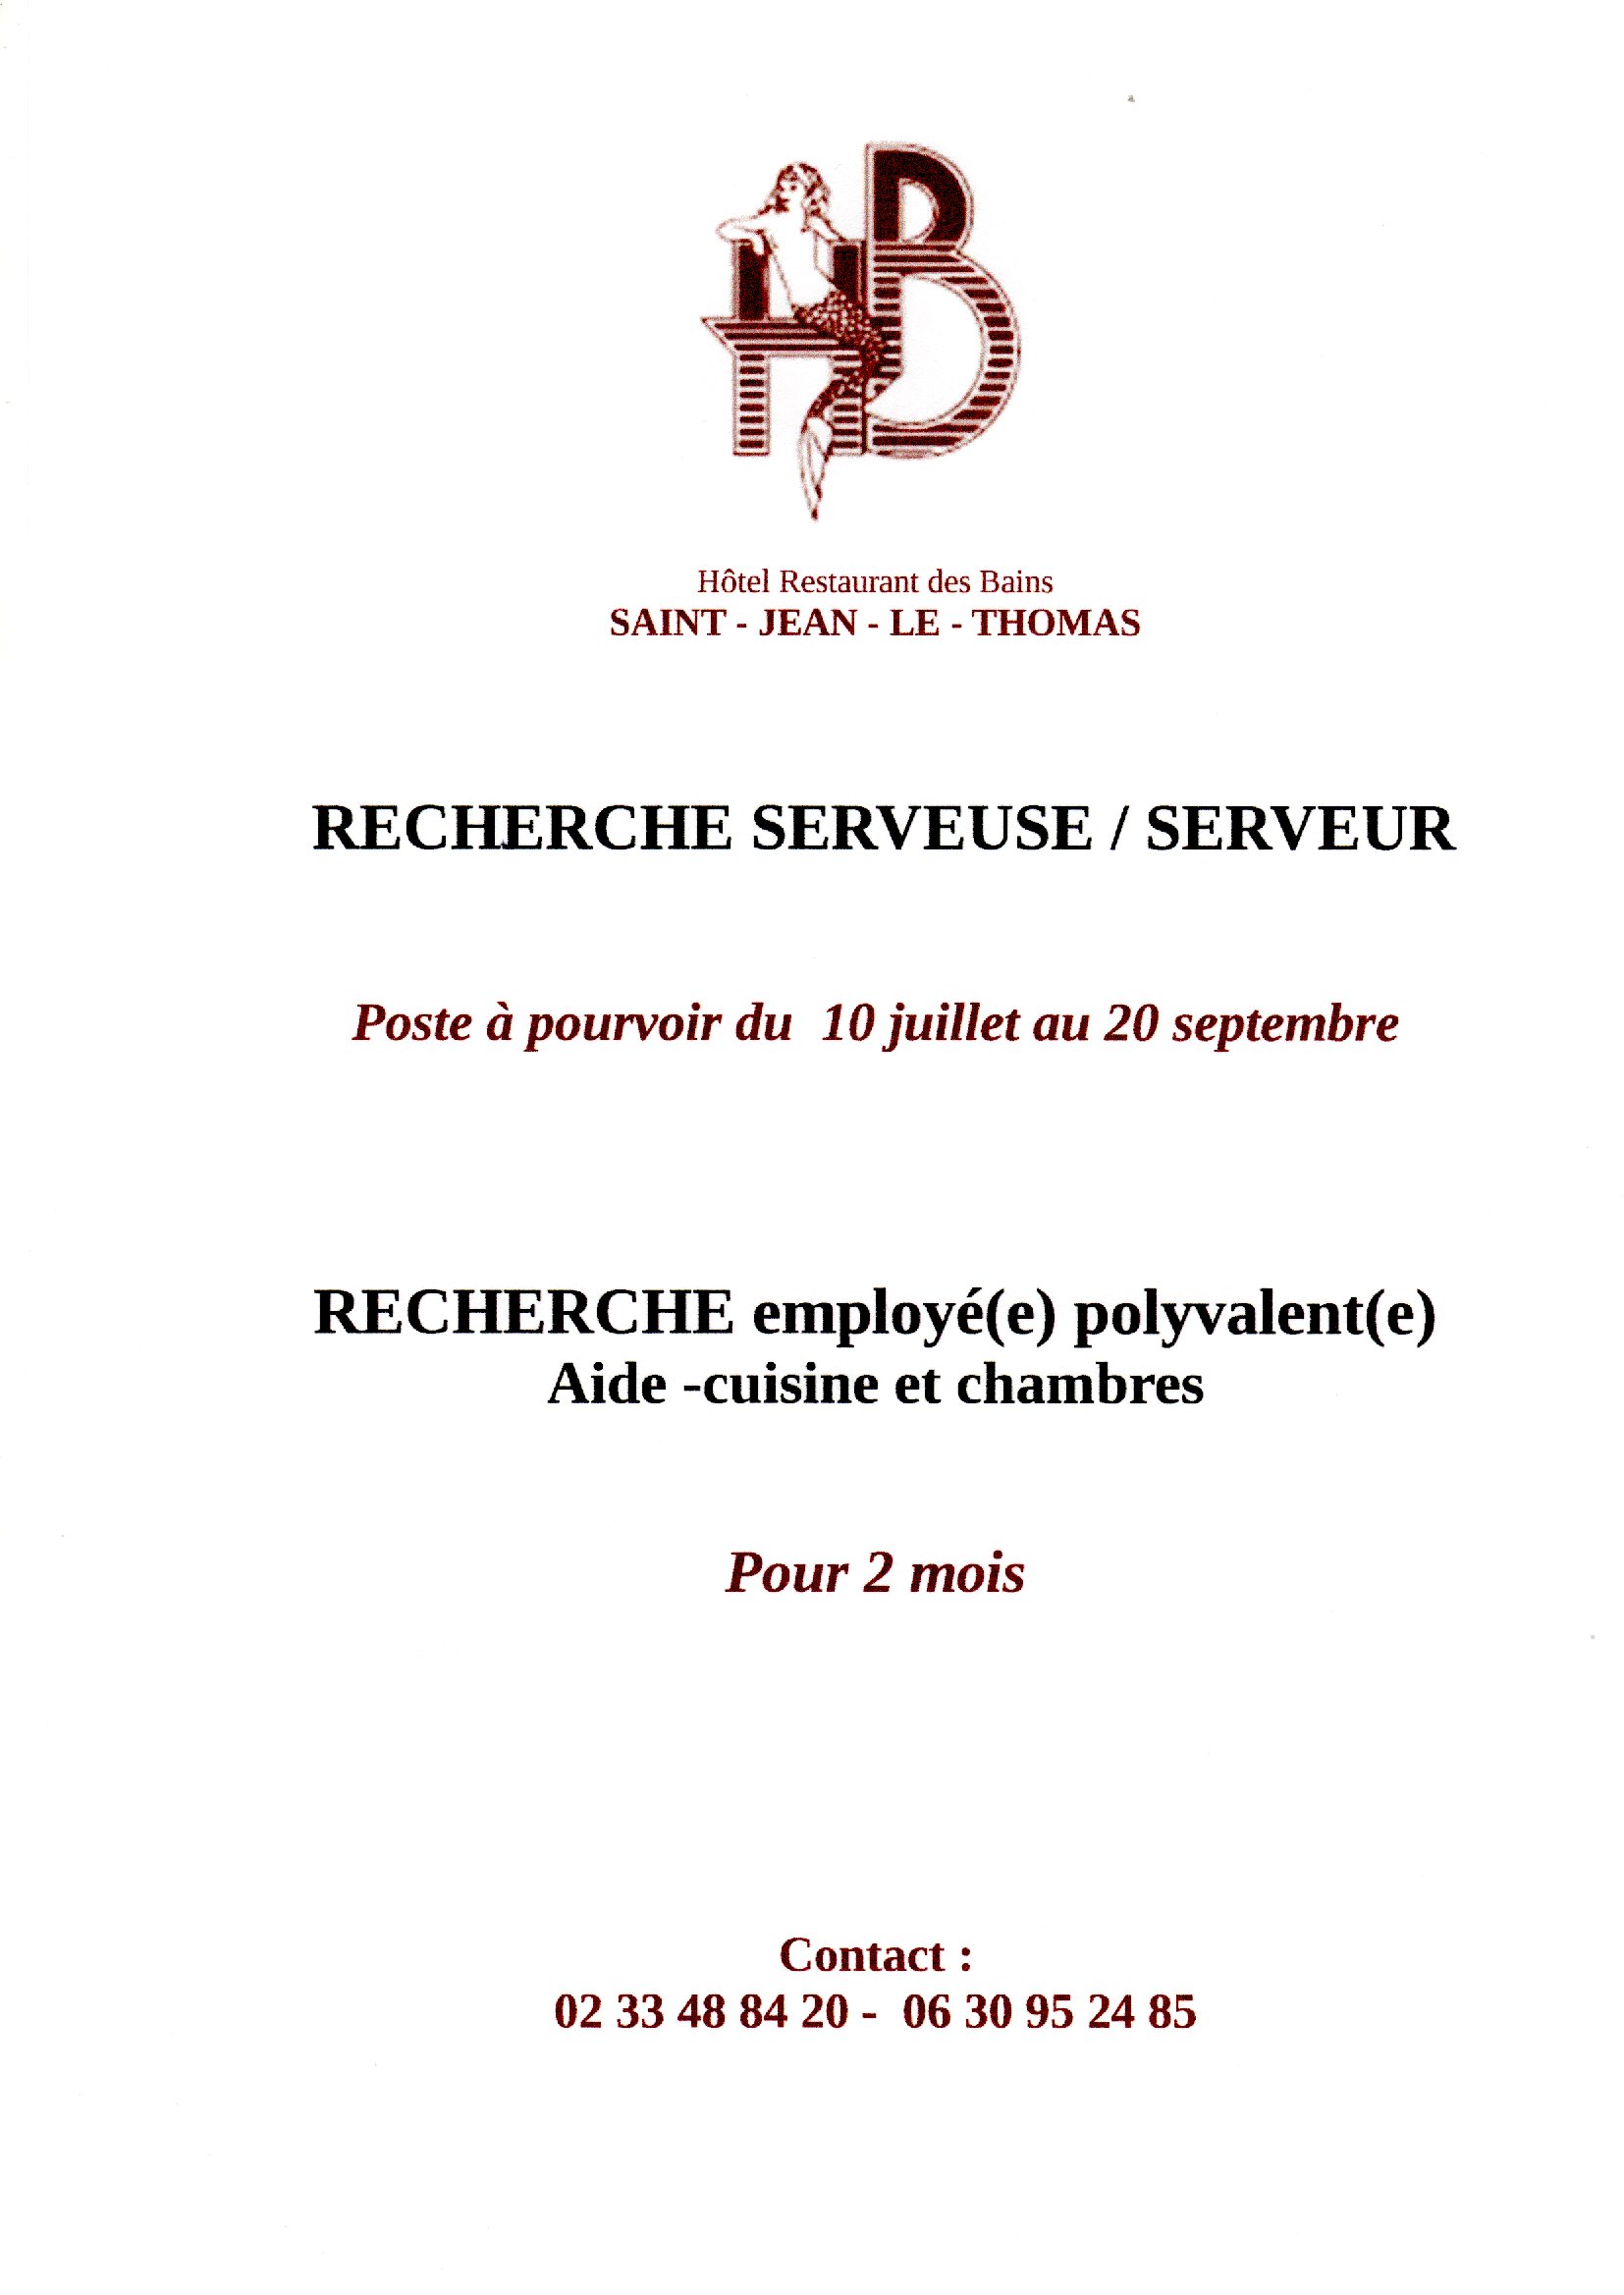 Offre d'emploi à Saint Jean le Thomas à l'Hôtel des Bains